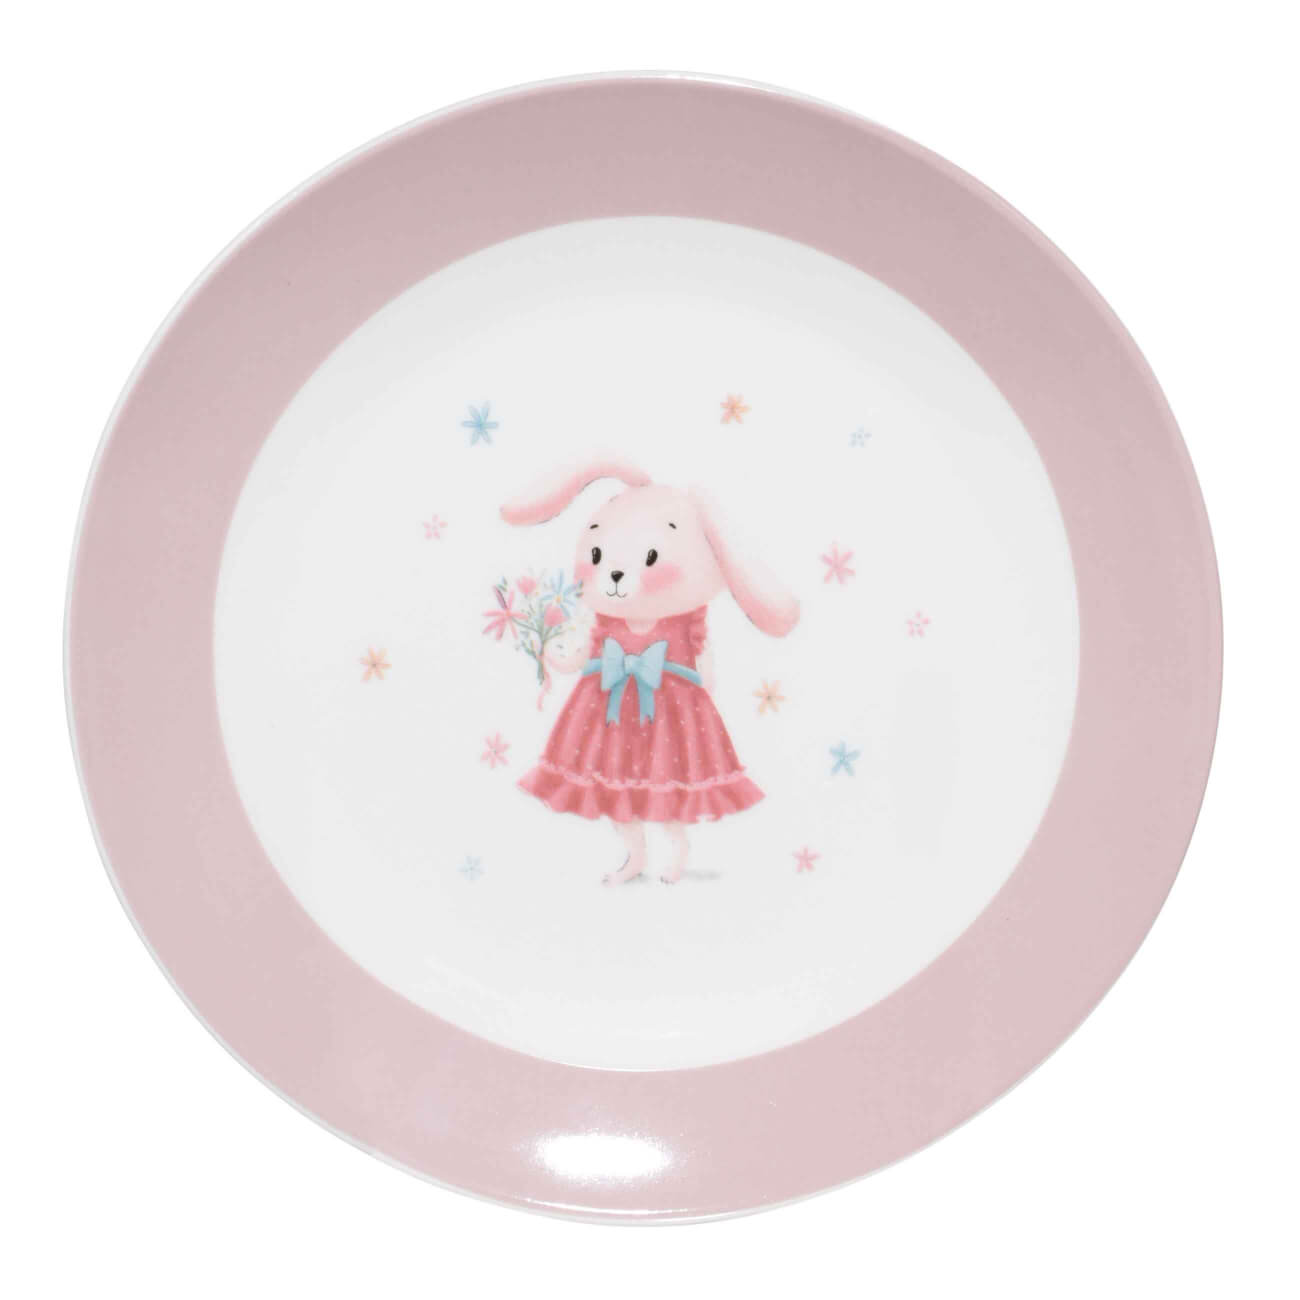 Тарелка закусочная, детская, 19 см, фарфор N, бело-розовая, Крольчиха с цветами, Ideas life тарелка детская 17х16 см на присоске силикон пудровая котик kiddy